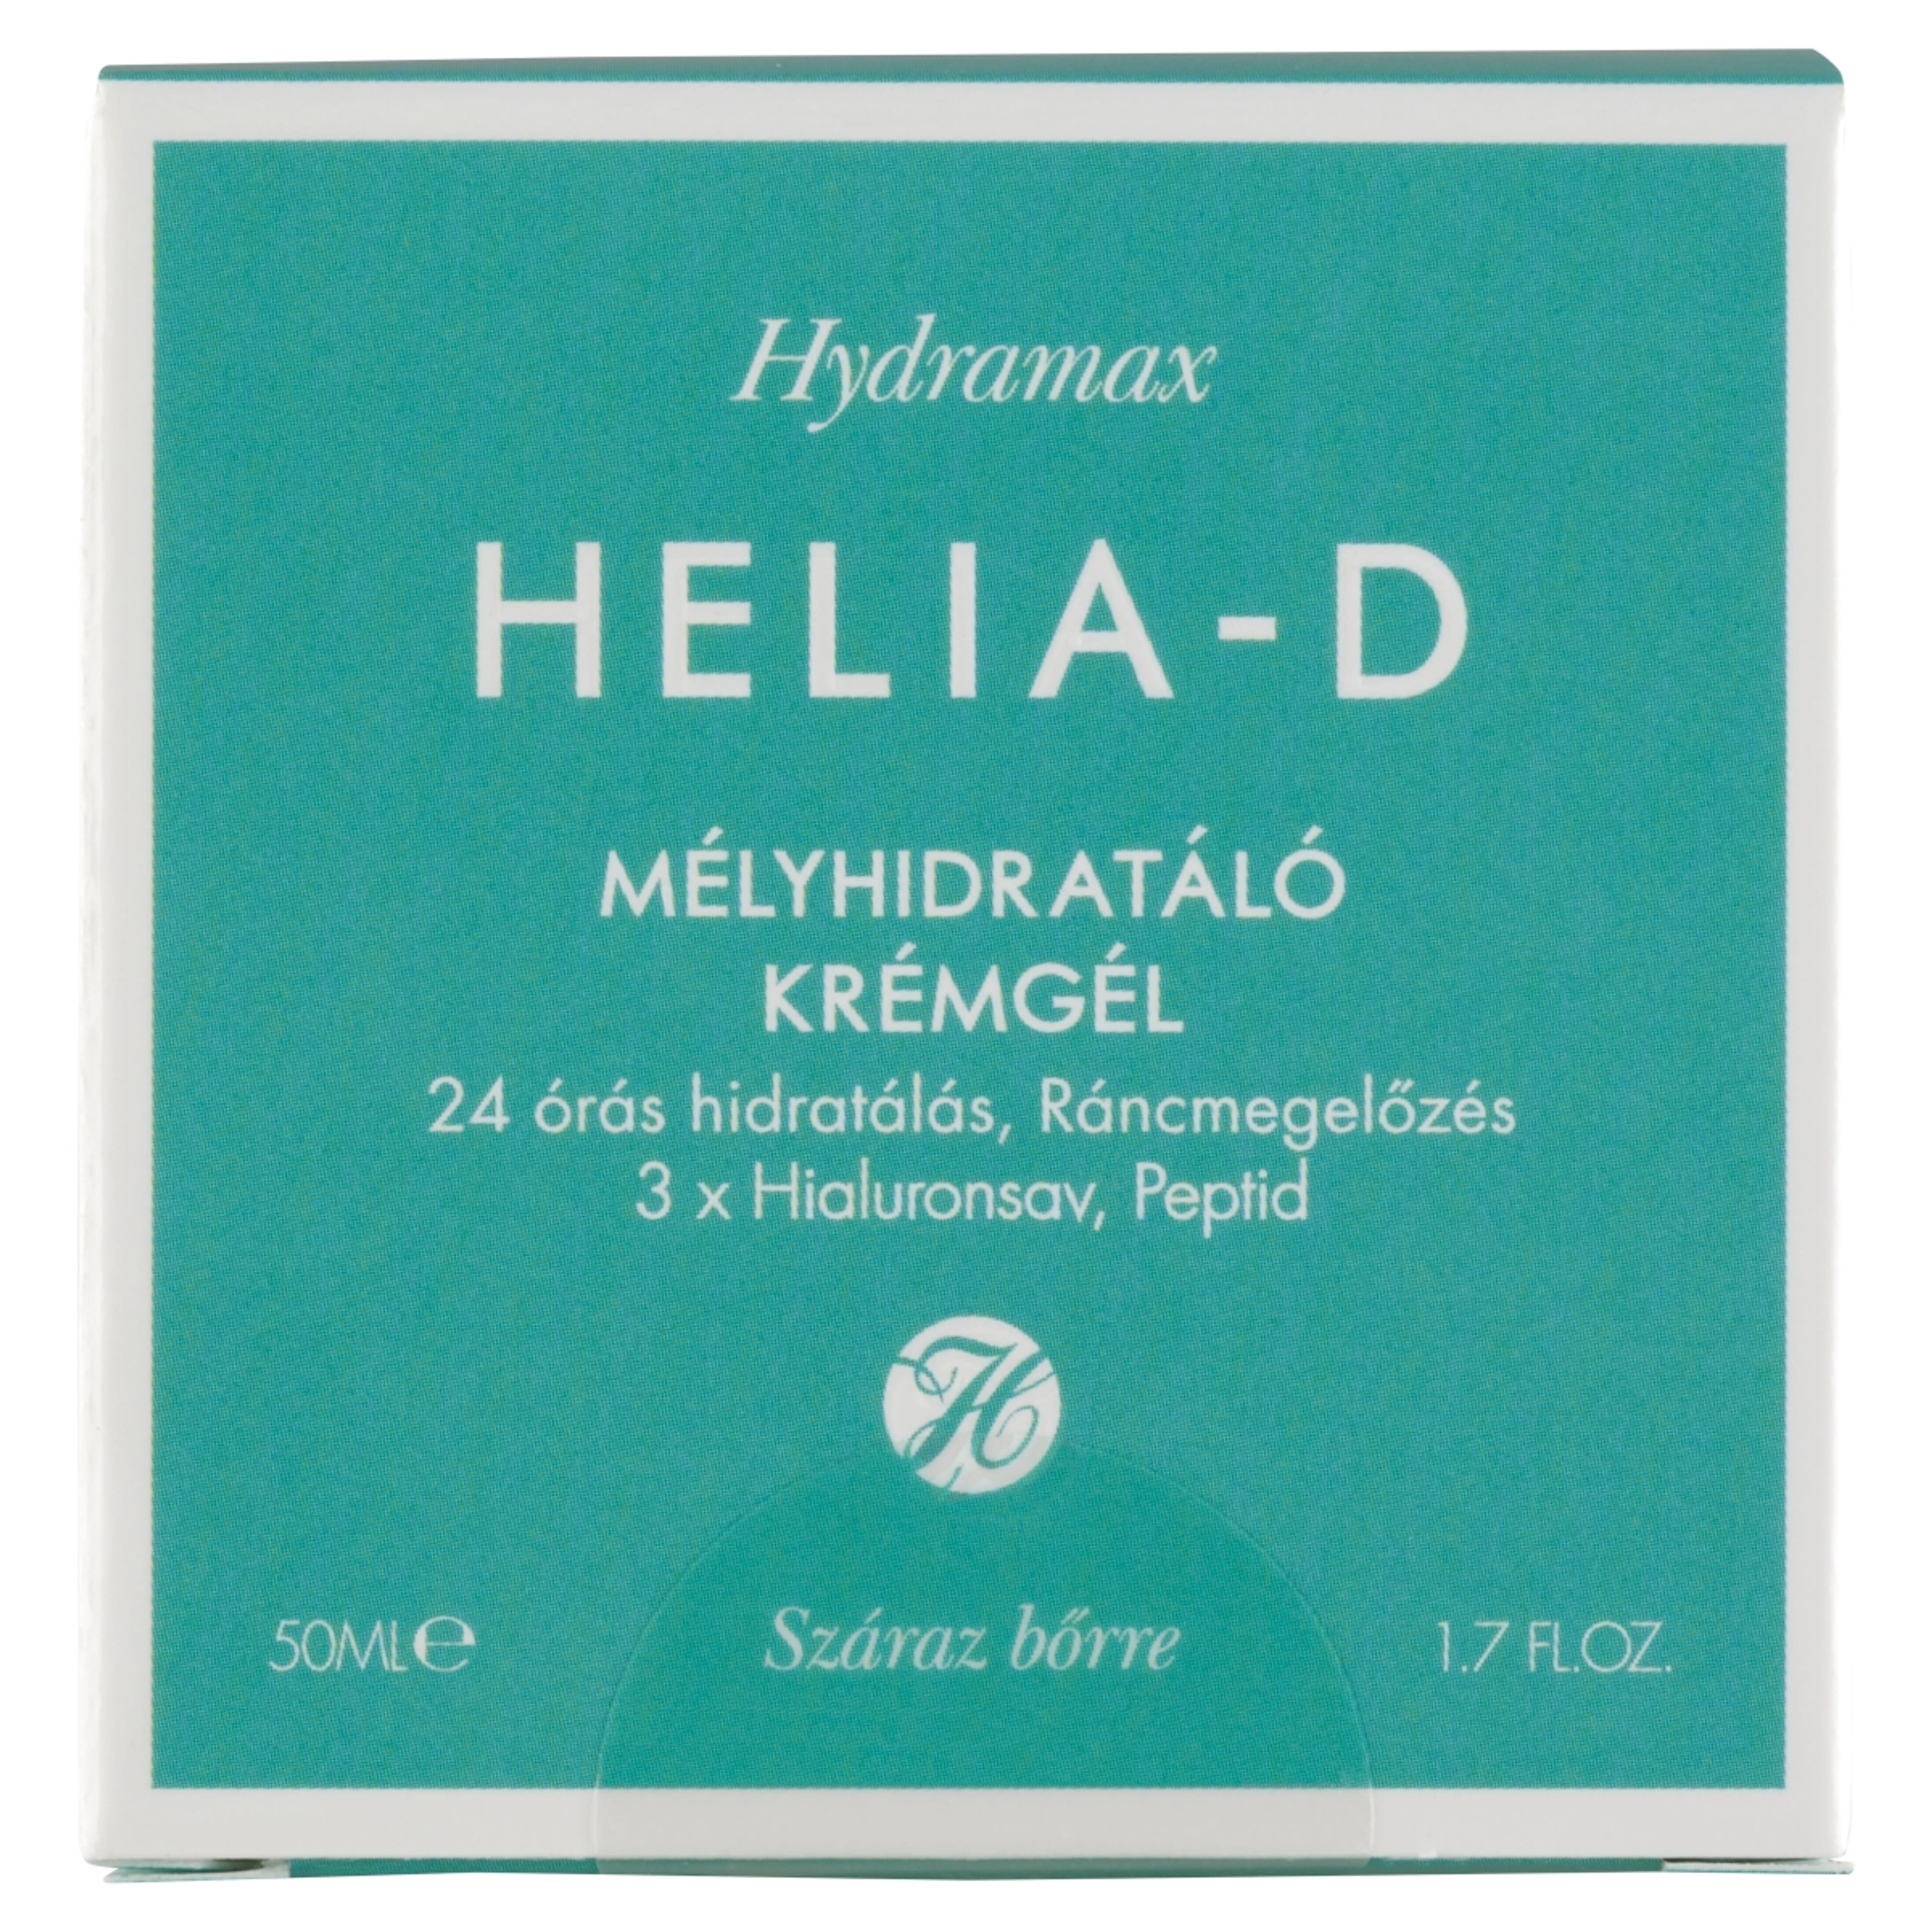 Helia-D Hydramax mélyhidratáló krémgél száraz bőrre - 50 ml